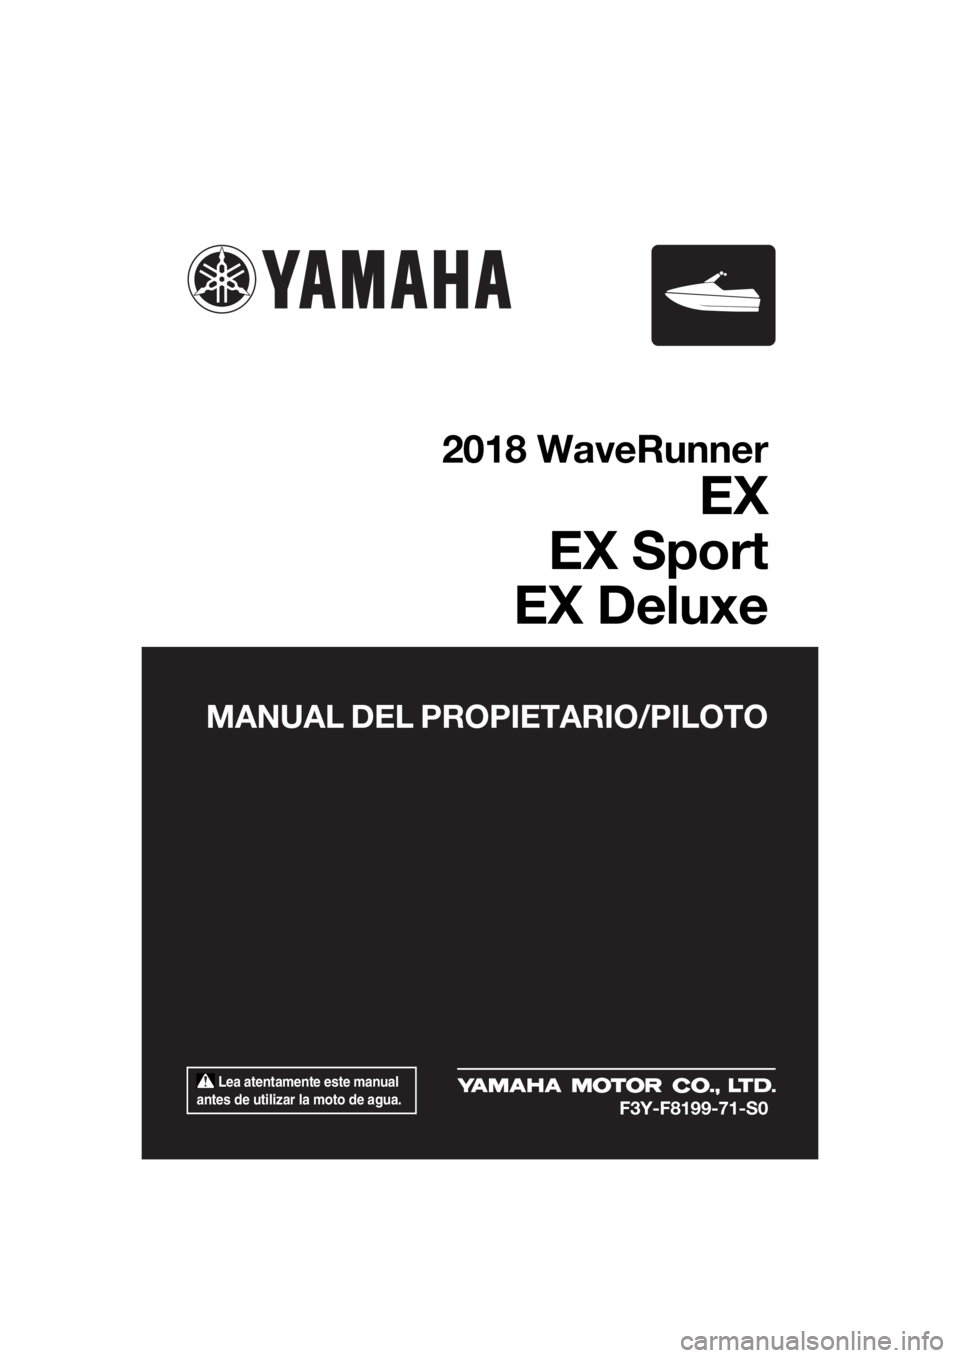 YAMAHA EX 2018  Manuale de Empleo (in Spanish)  Lea atentamente este manual 
antes de utilizar la moto de agua.
MANUAL DEL PROPIETARIO/PILOTO
2018 WaveRunner
EX
EX Sport
EX Deluxe
F3Y-F8199-71-S0
UF3Y71S0.book  Page 1  Wednesday, May 24, 2017  3:3